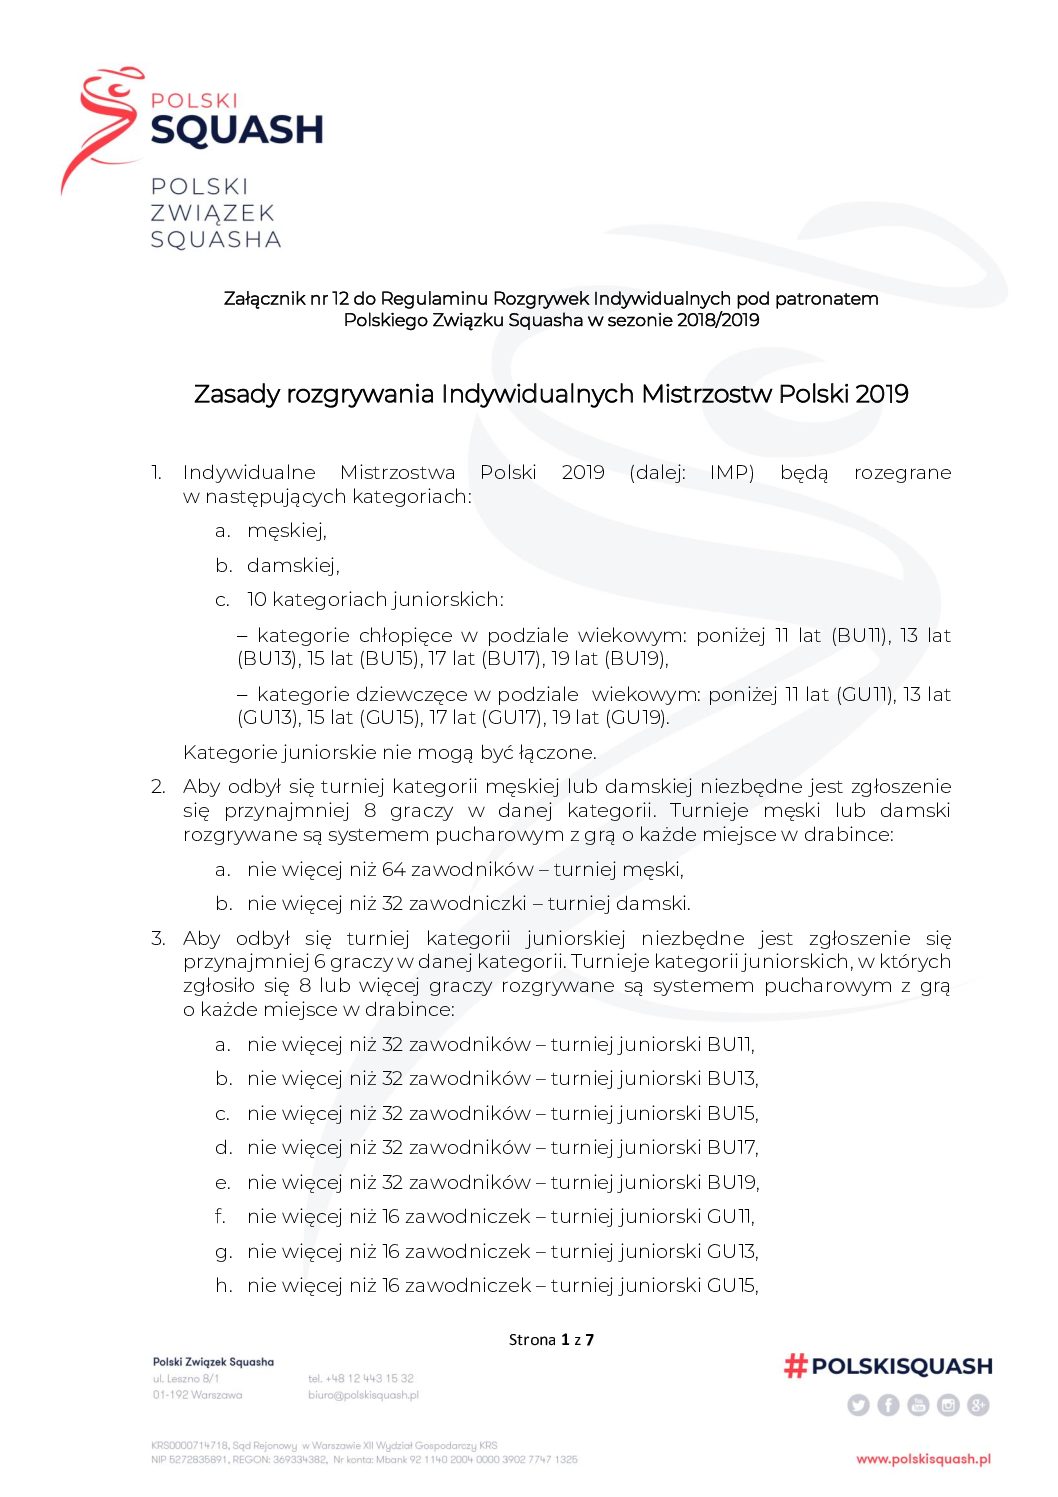 Załącznik 12 - Regulamin rozegrania Indywidualnych Mistrzostw Polski